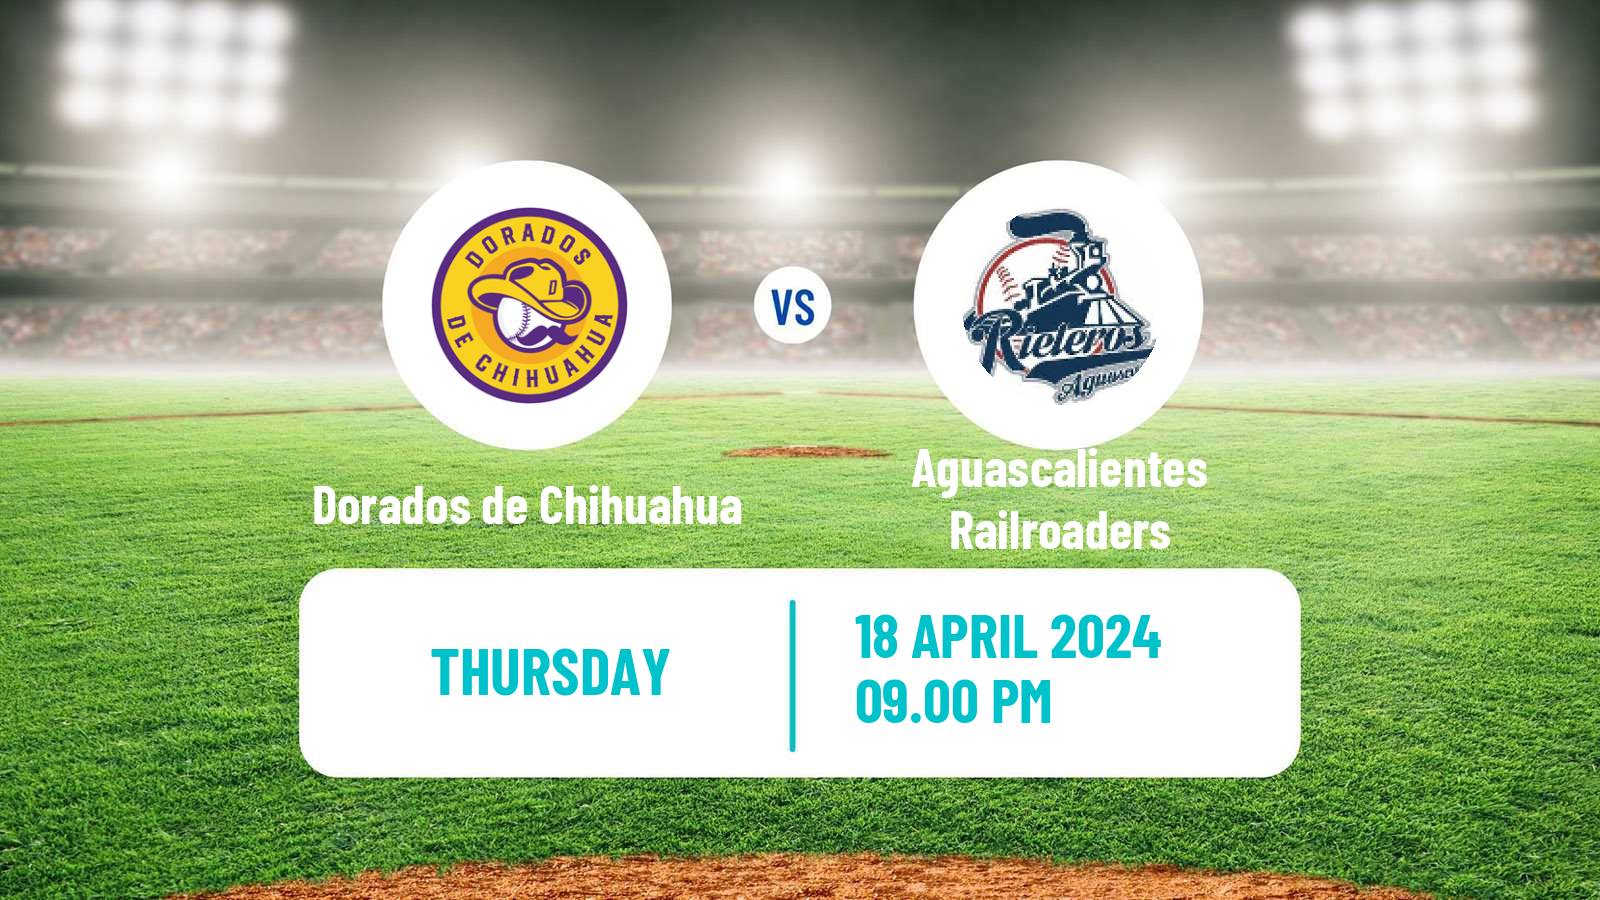 Baseball LMB Dorados de Chihuahua - Aguascalientes Railroaders